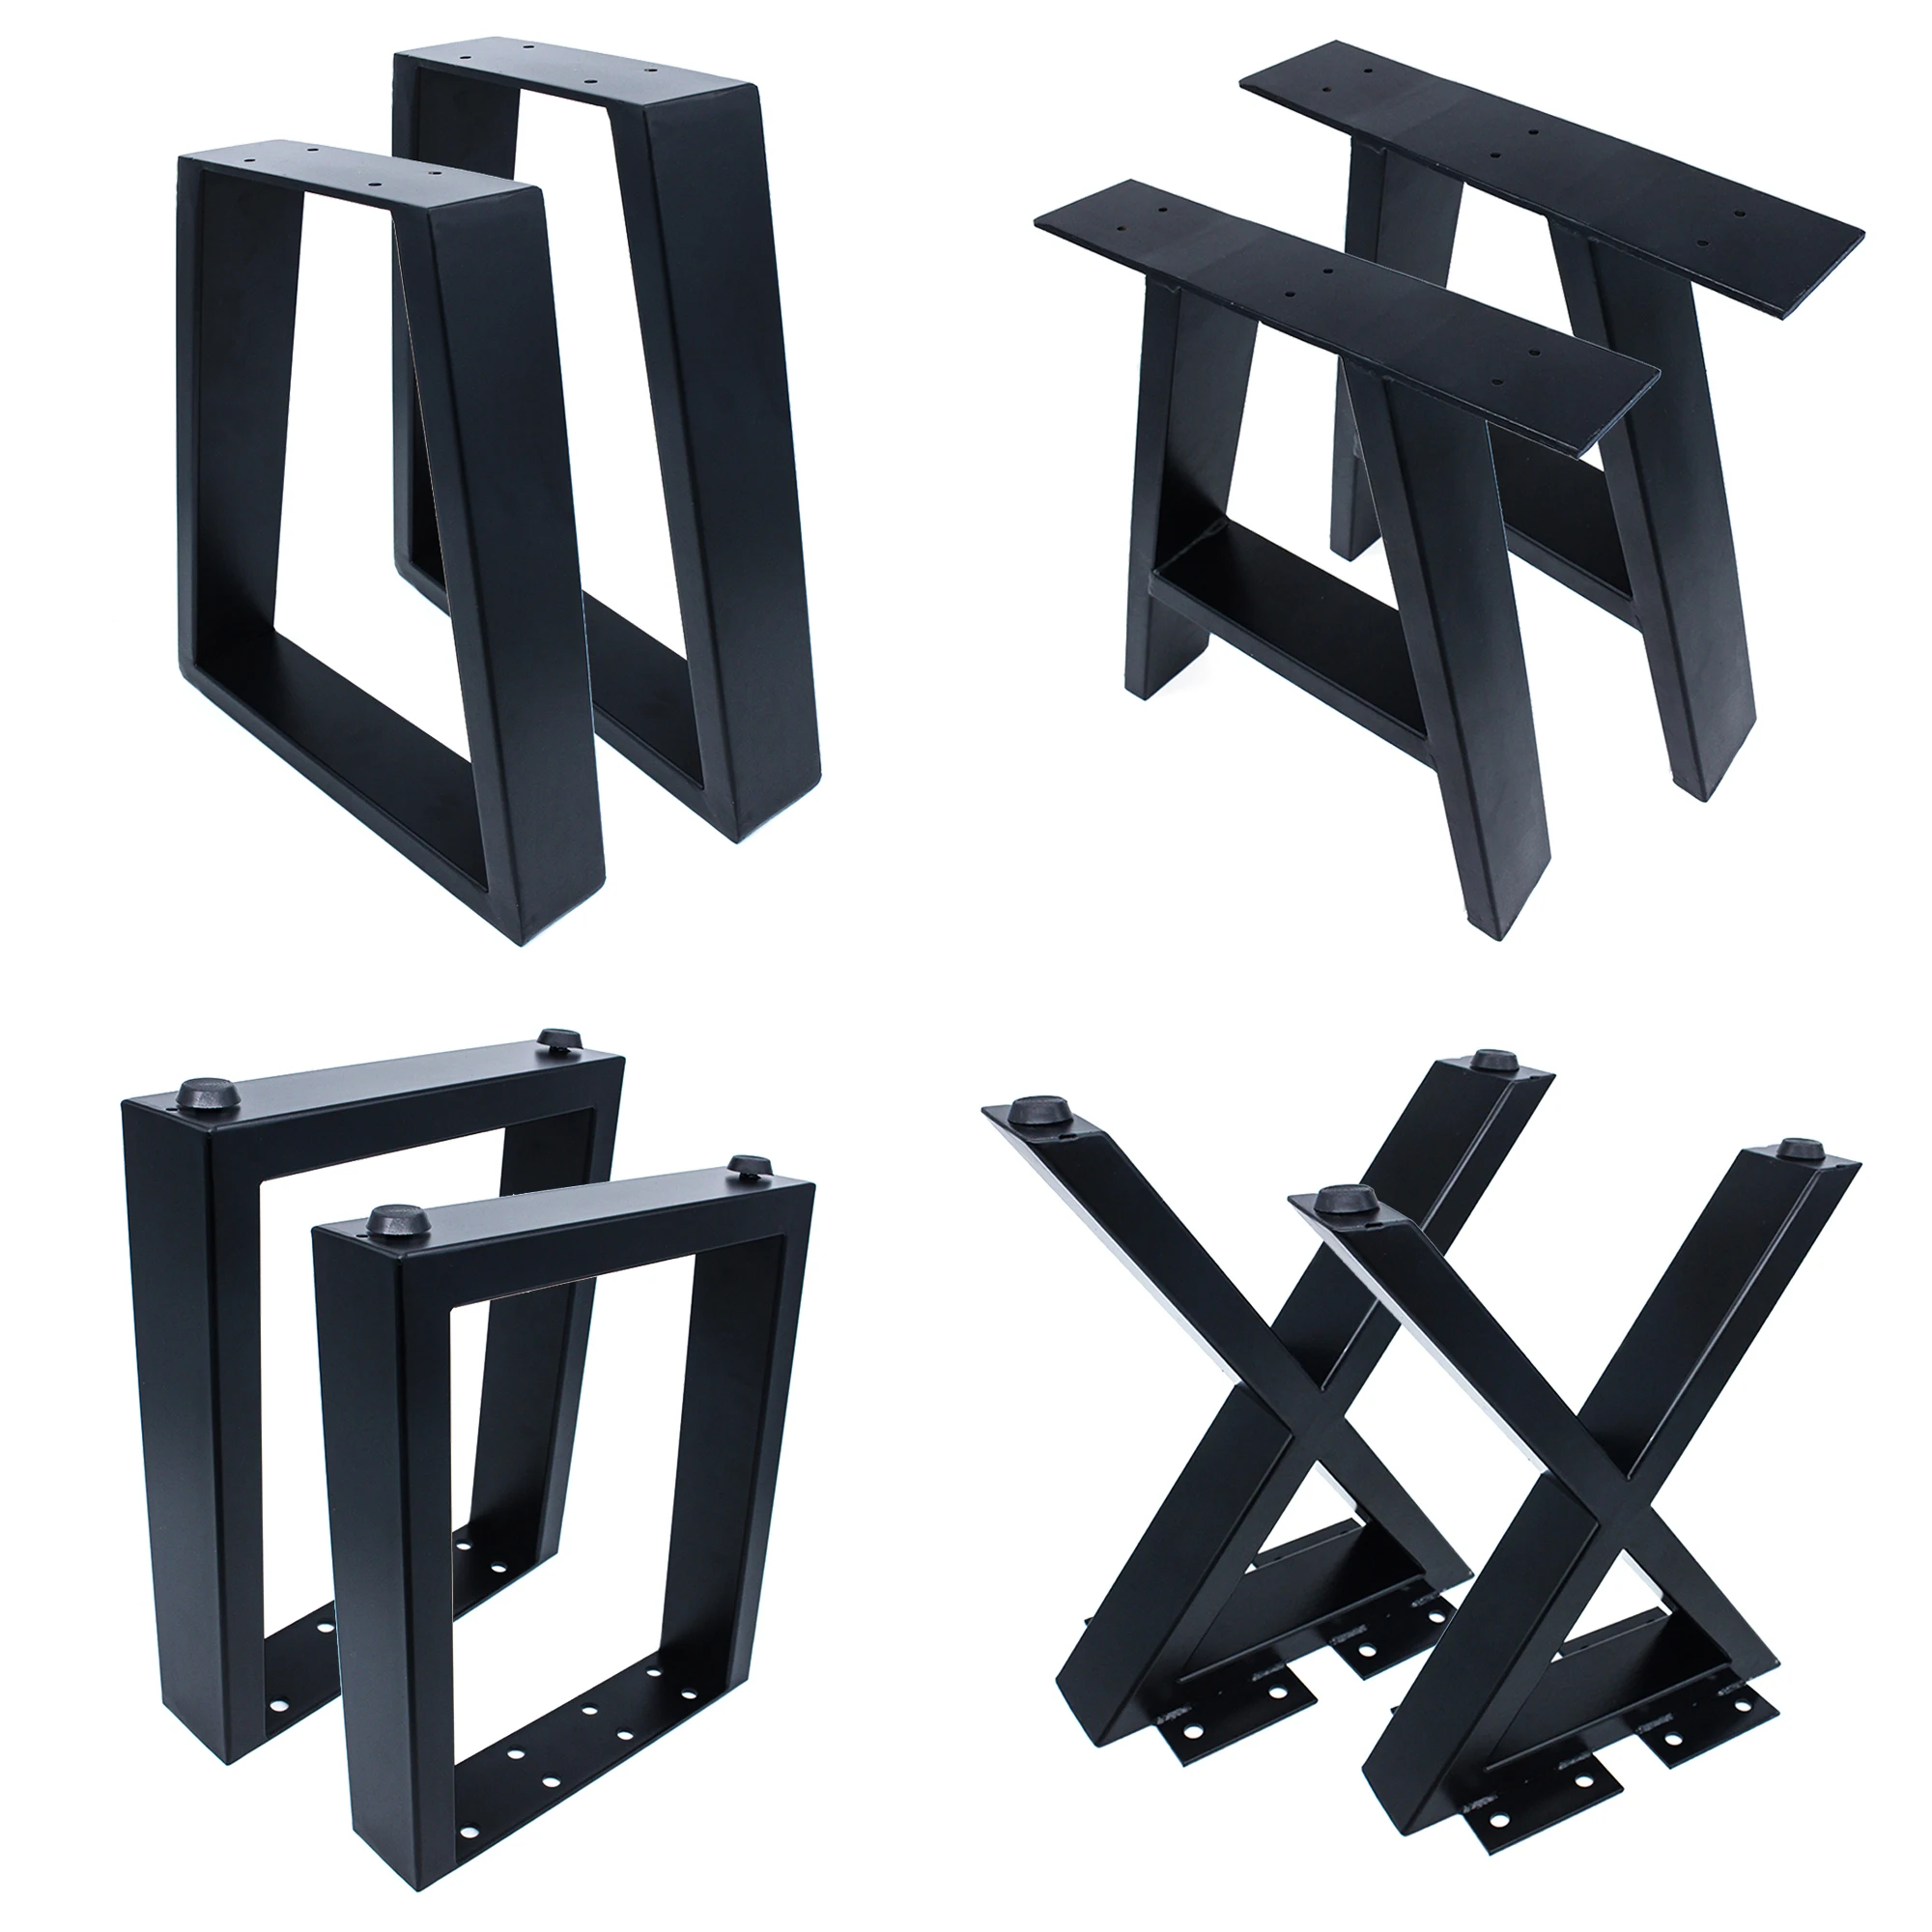 Noir forgé industriel moderne cadre brossé revêtement en poudre carré X en forme de verre bureau en métal fonte banc Table basse jambes